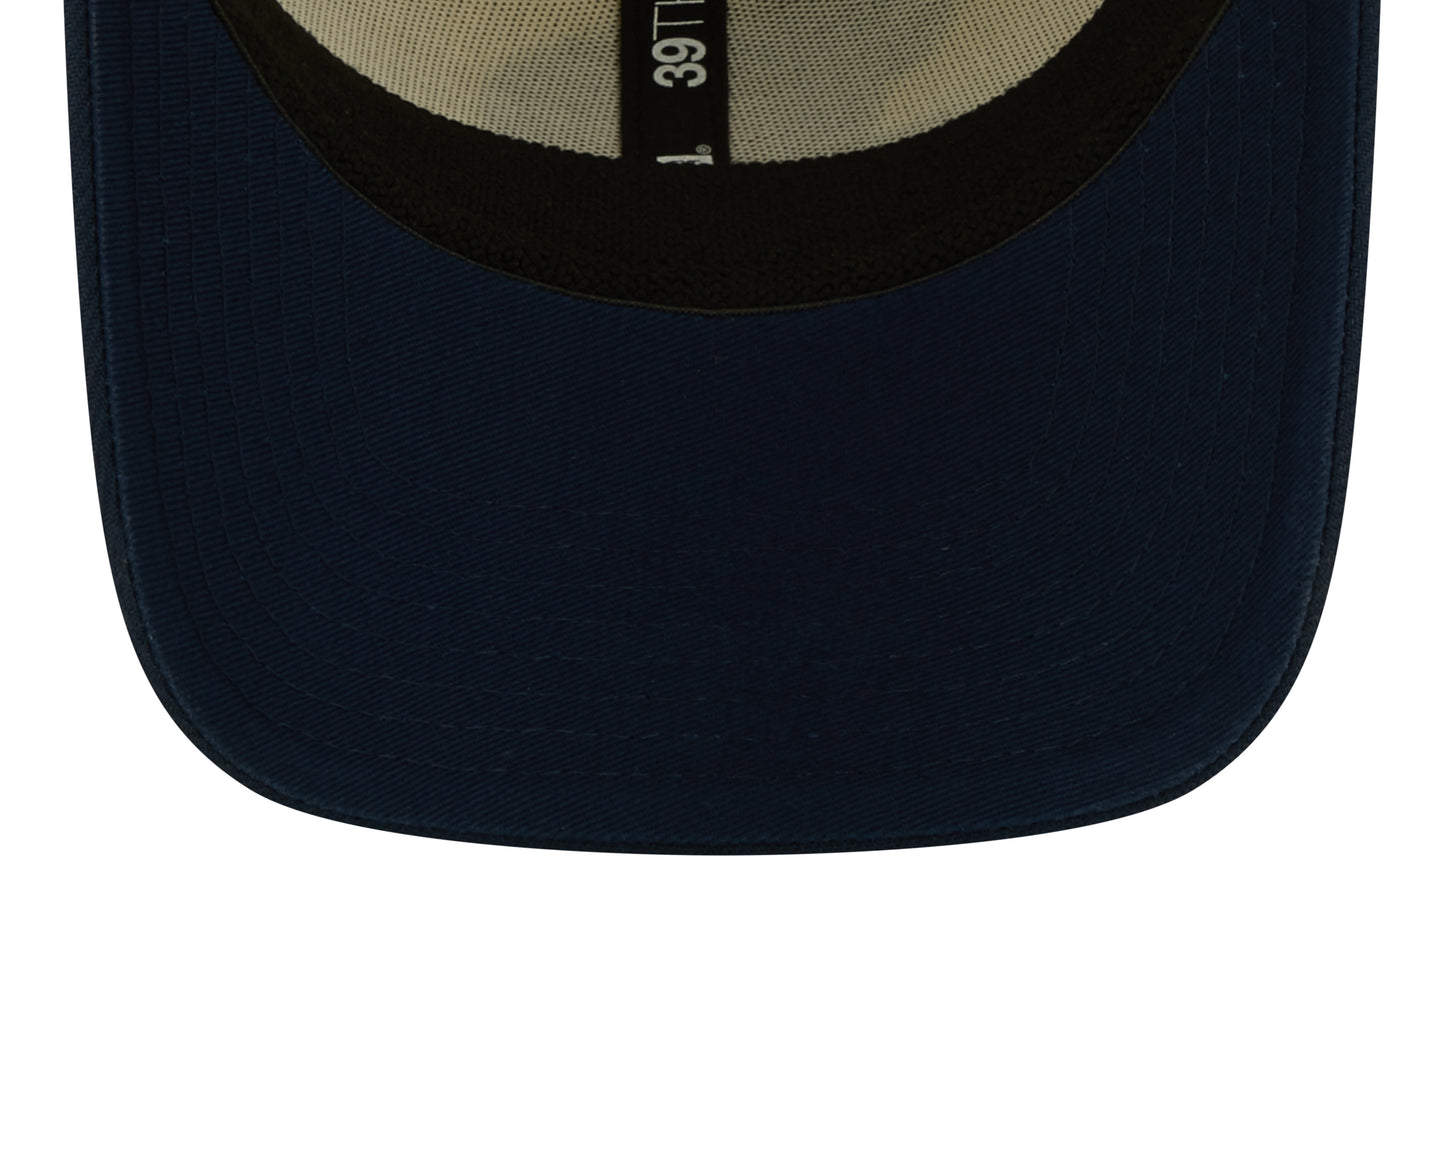 Men's Tennessee Titans New Era Cream/Navy 2022 Sideline 39THIRTY Flex Hat